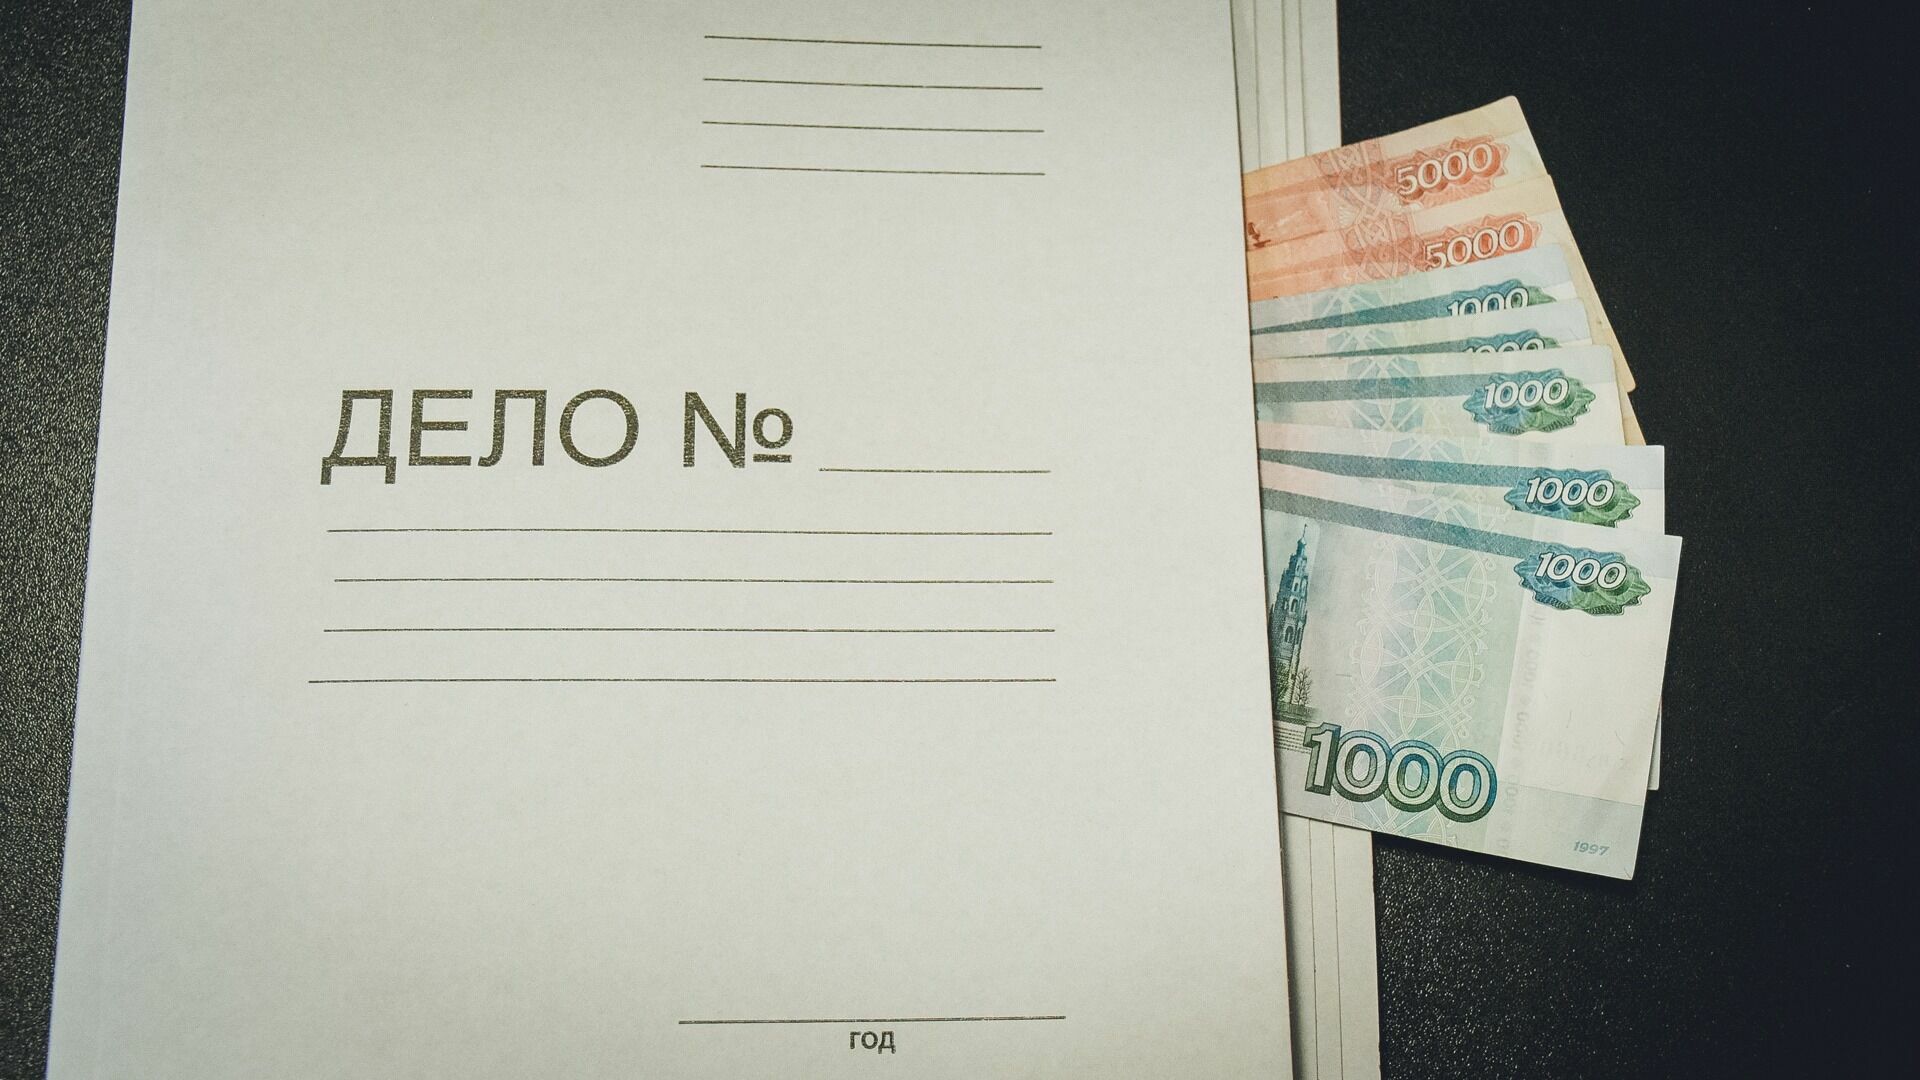 За 500 поддельных рублей жителю Нижнего Тагила грозит до 8 лет тюрьмы